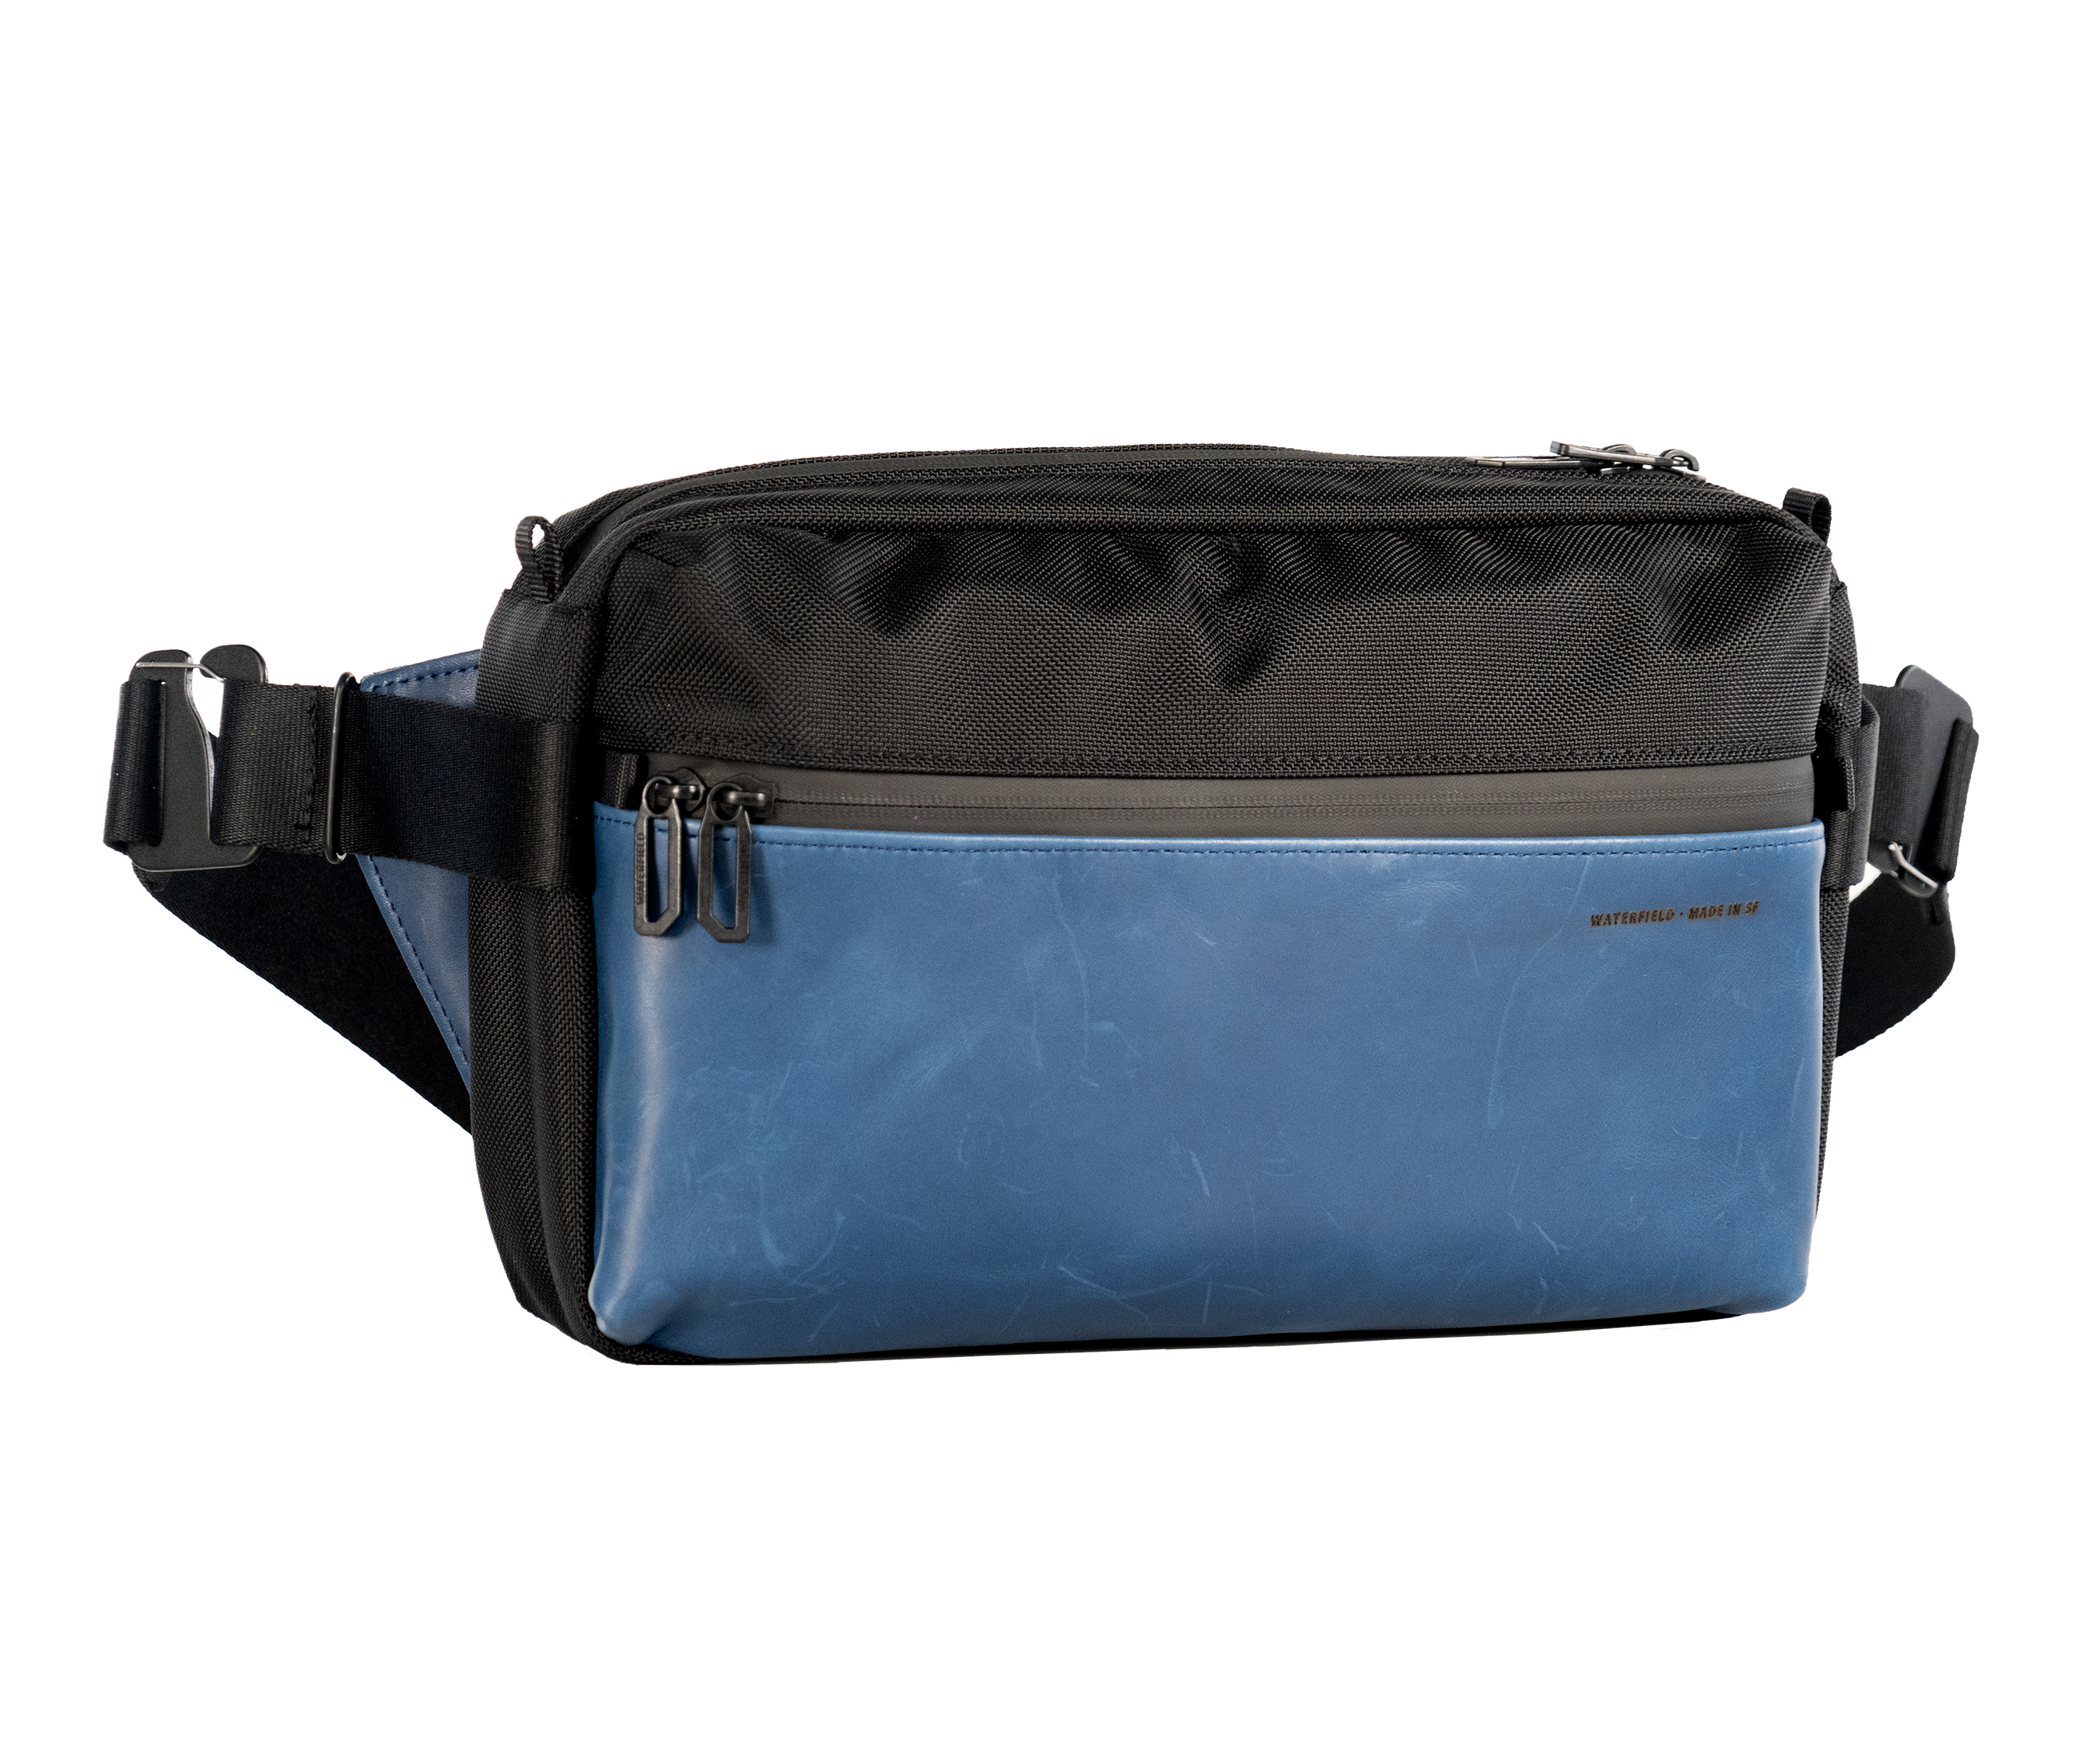 Full-sized Hip Sling Bag in black nylon with blue full-grain leather